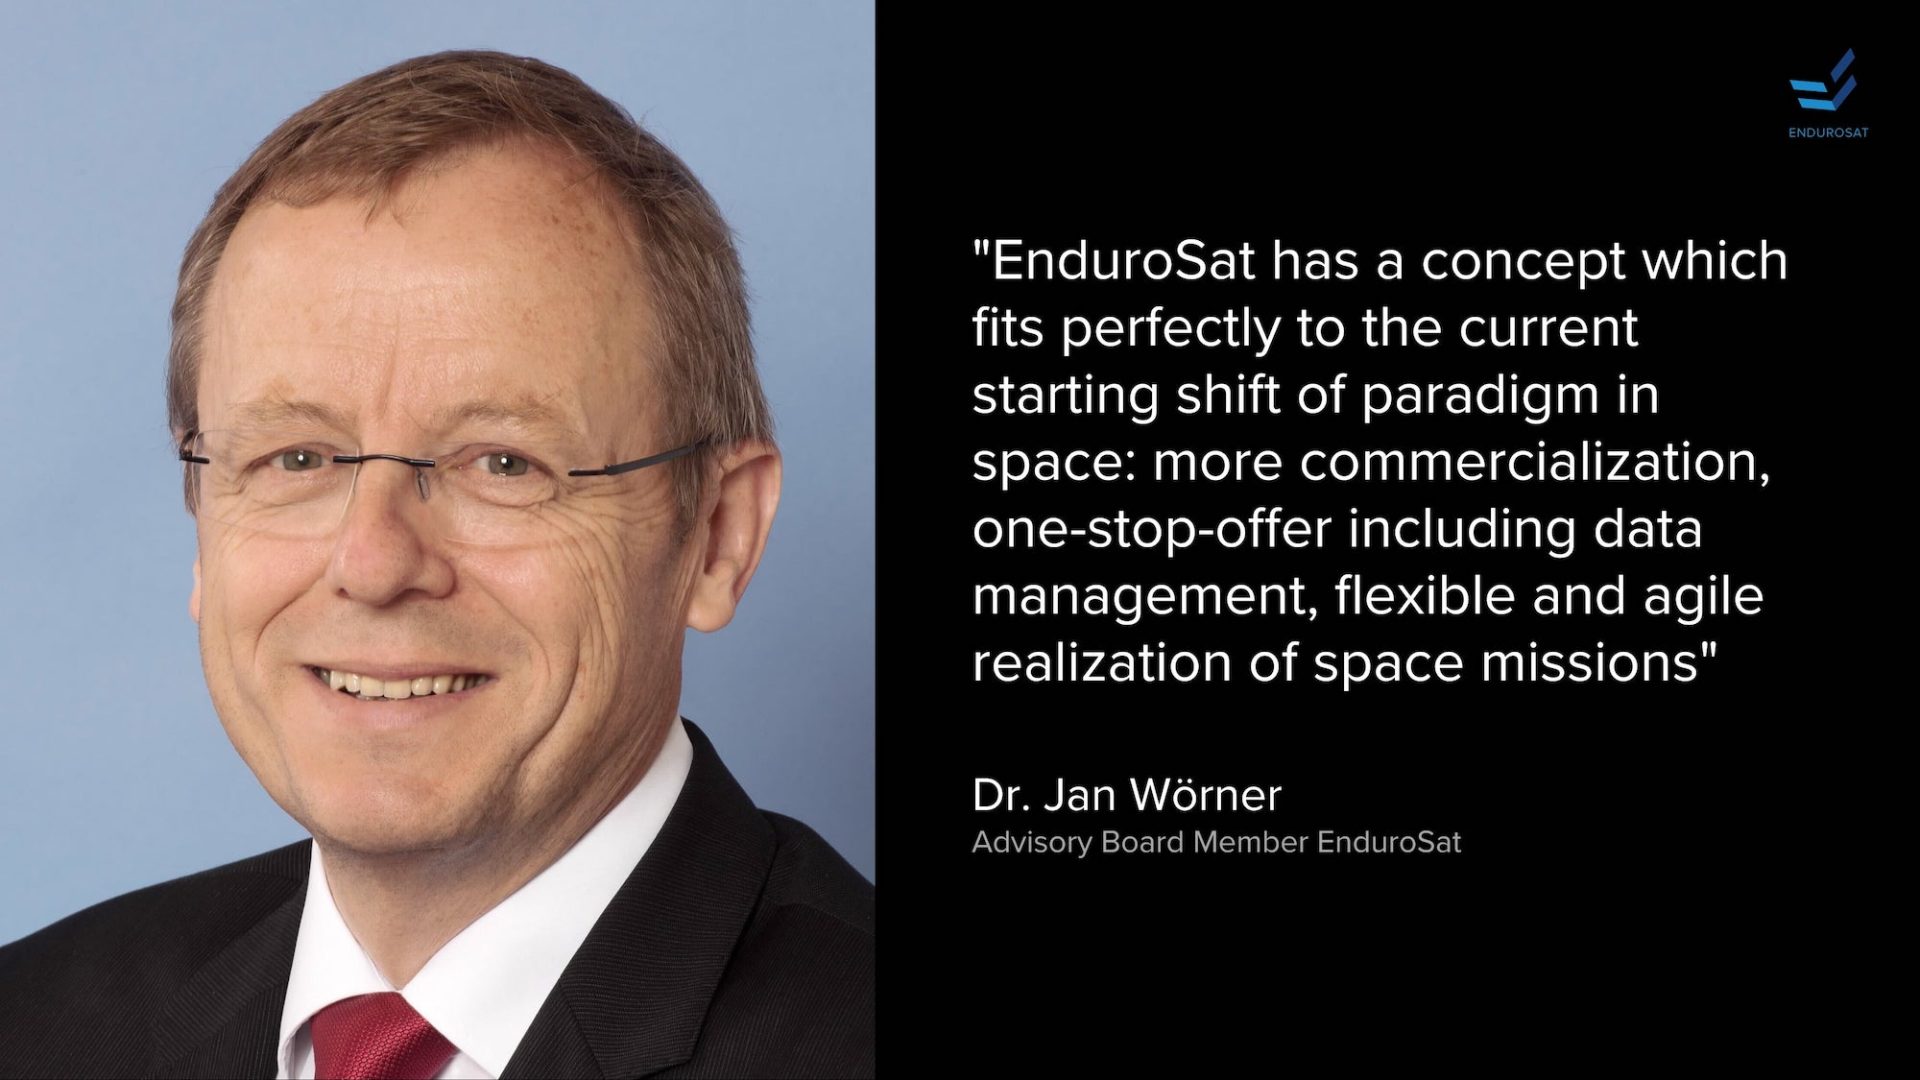 jan worner joins endurosat advisory board